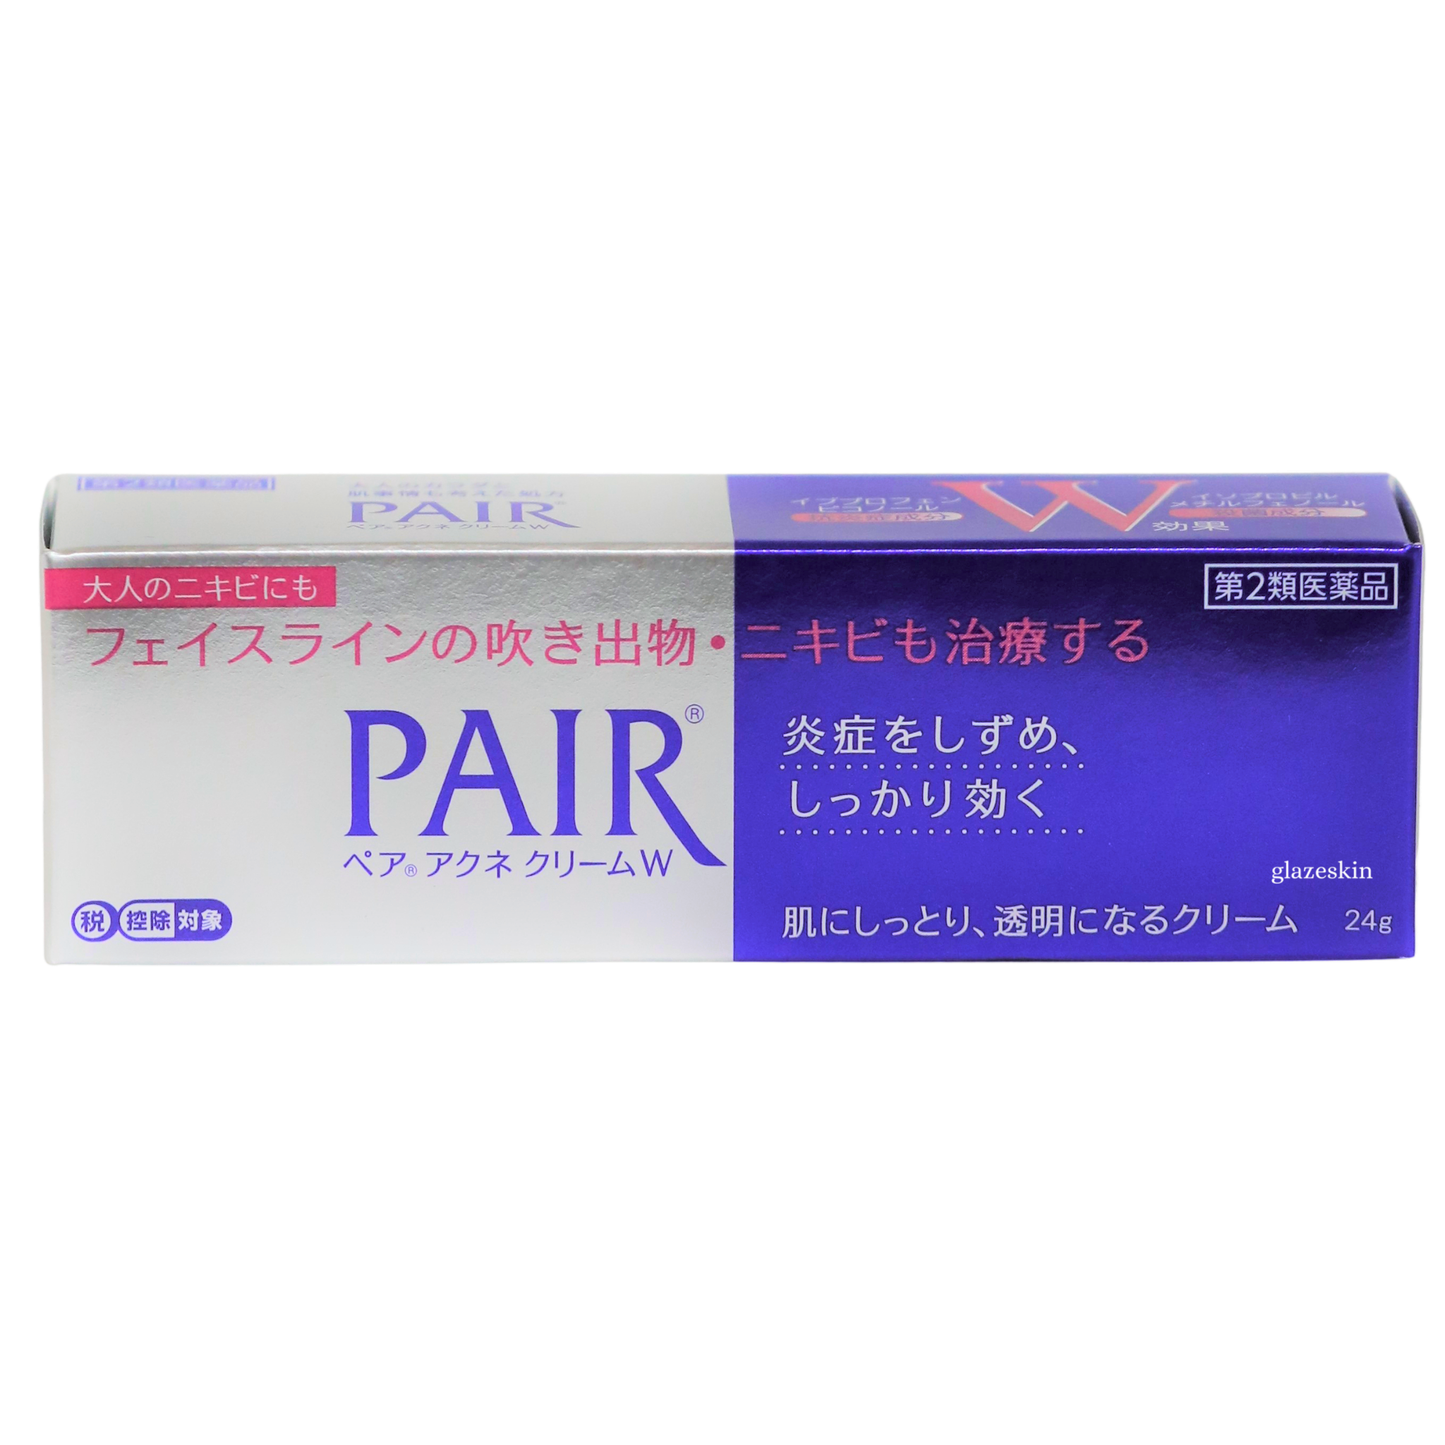 LION - Pair Acne Cream W - 24g - glazeskin